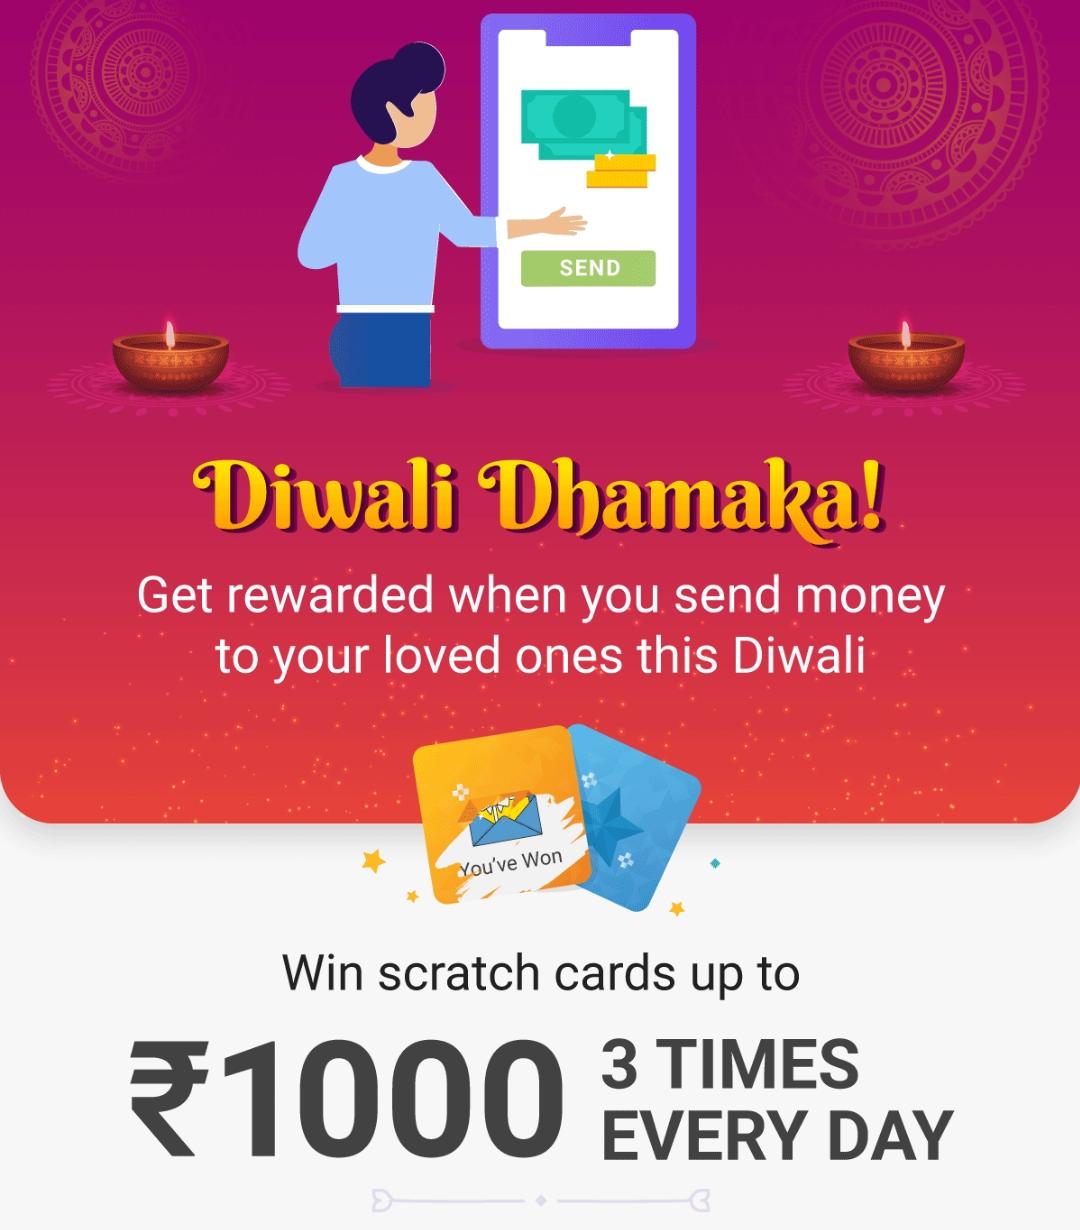 PhonePe Diwali Dhamaka